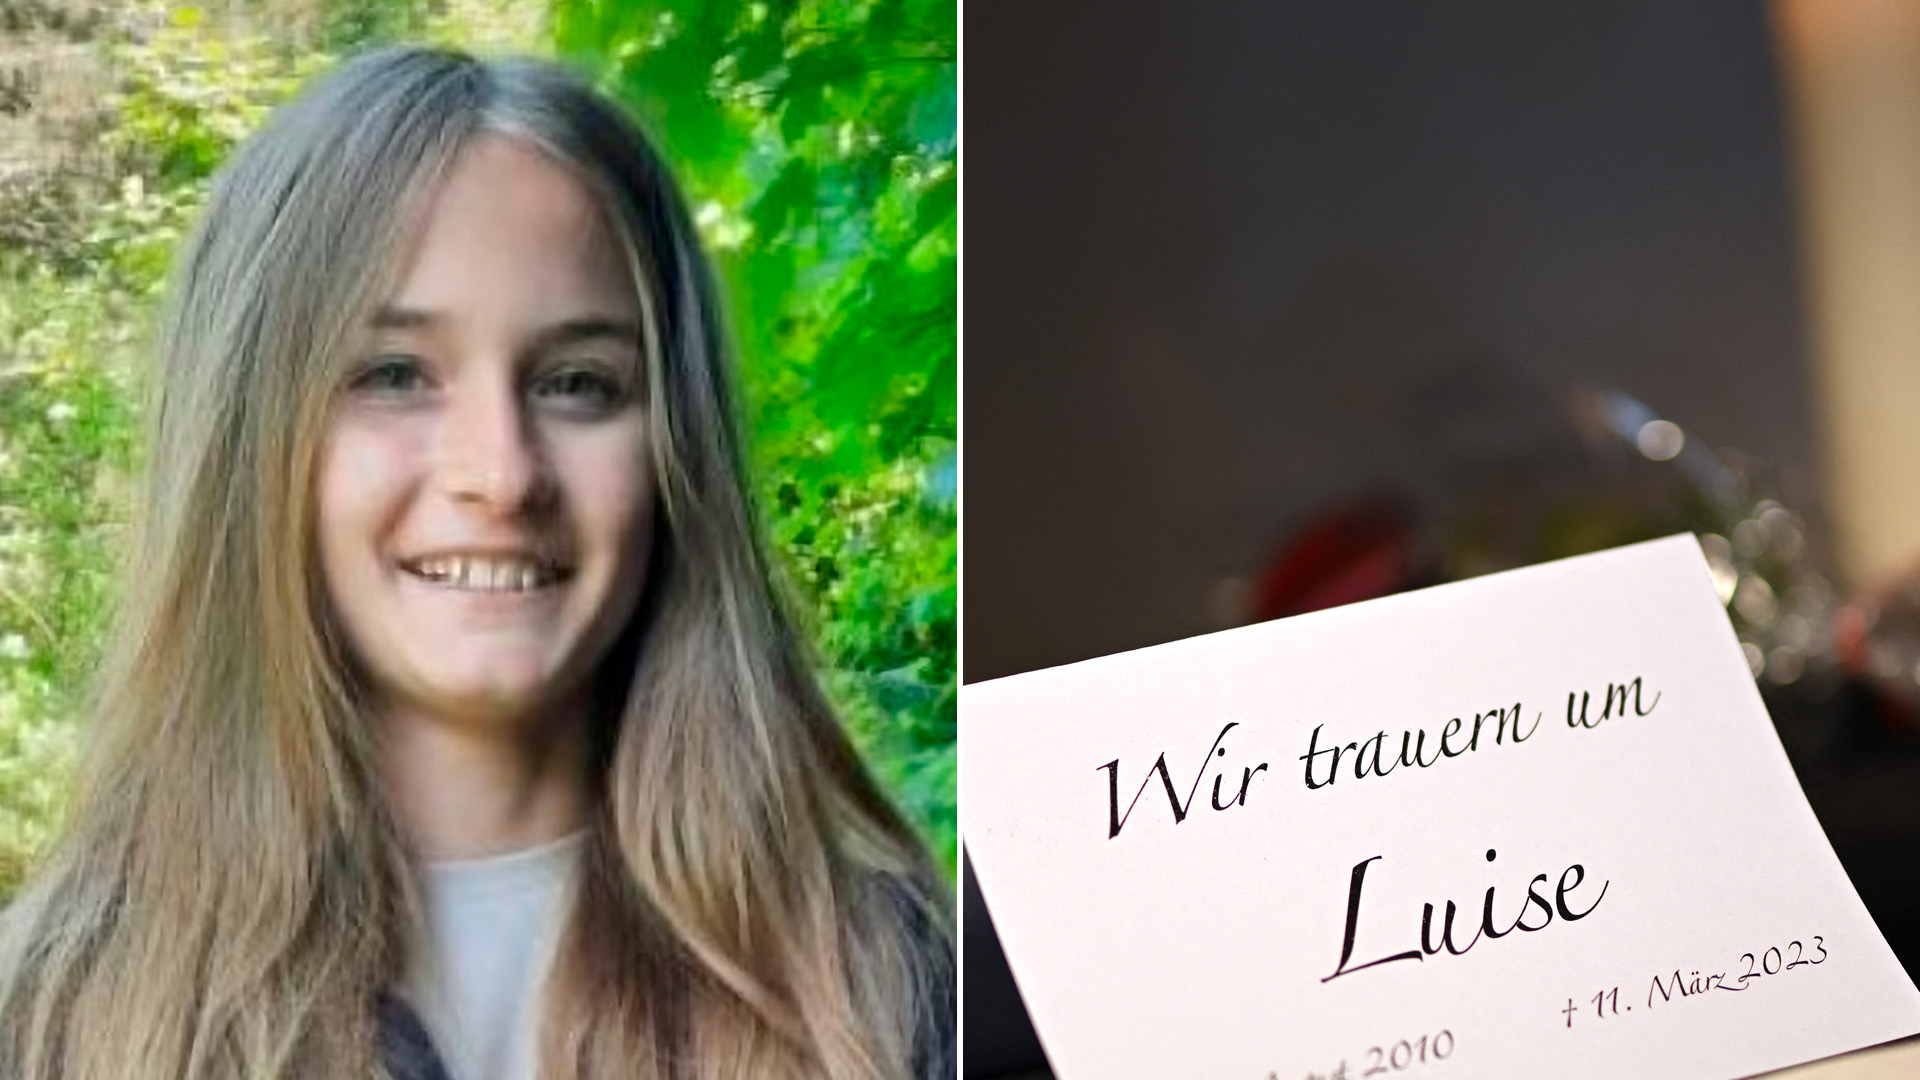 llorar laberinto transatlántico El asesinato que conmociona a Alemania: dos niñas de 12 y 13 años mataron a  una compañera de colegio de 30 puñaladas - Infobae